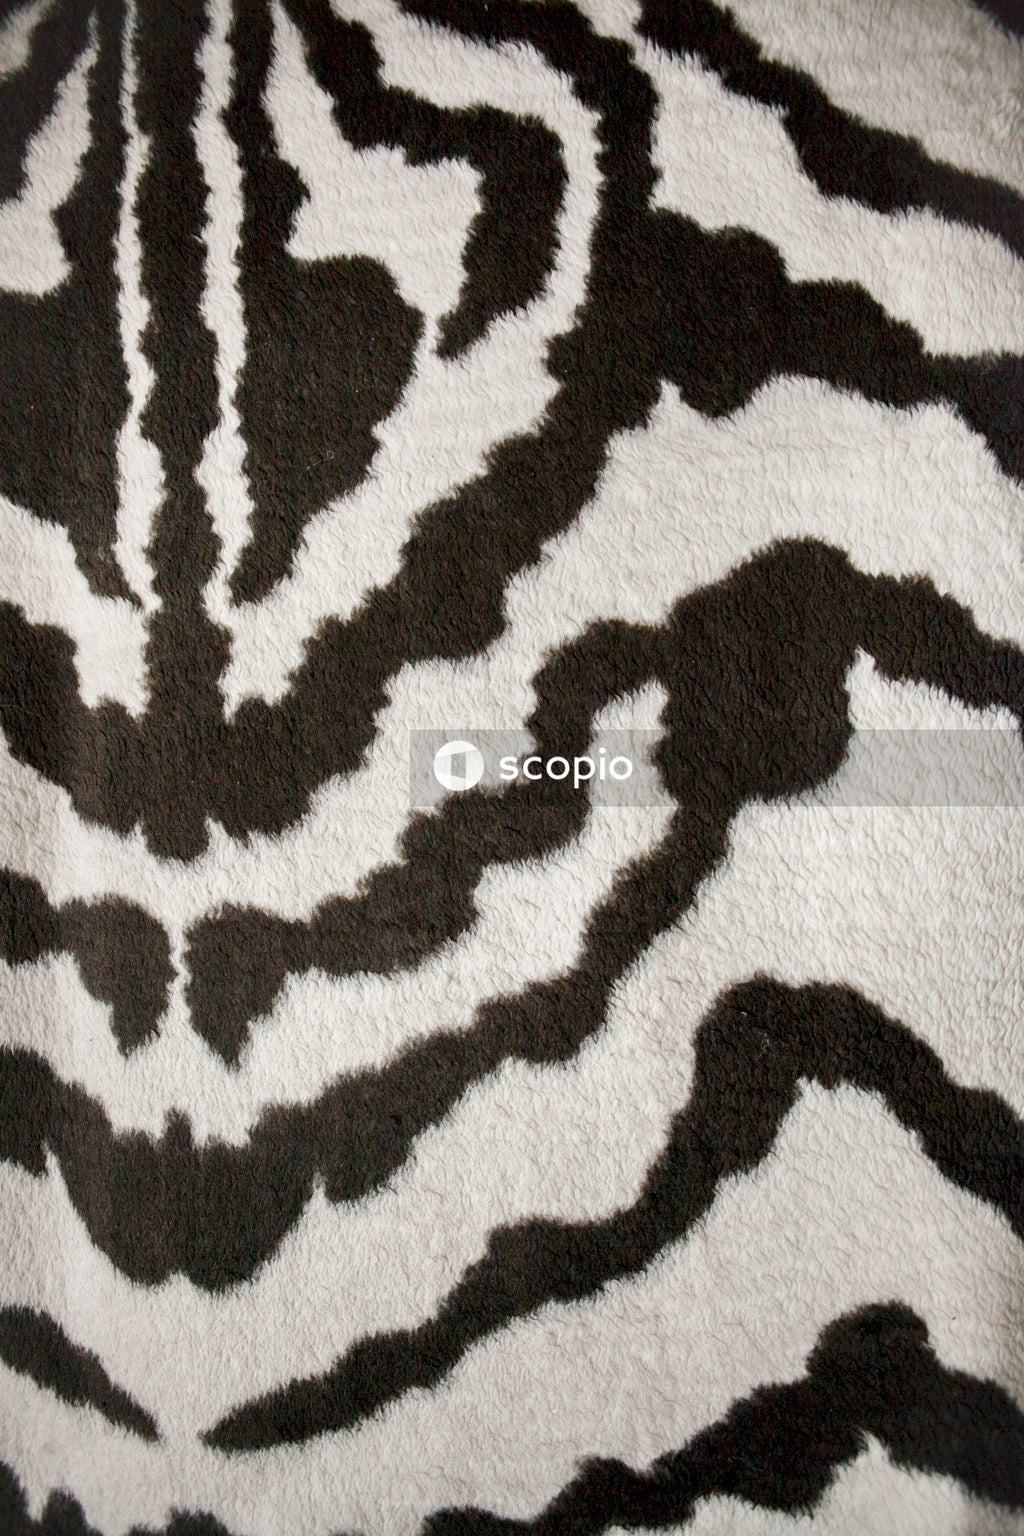 Black and white zebra textile